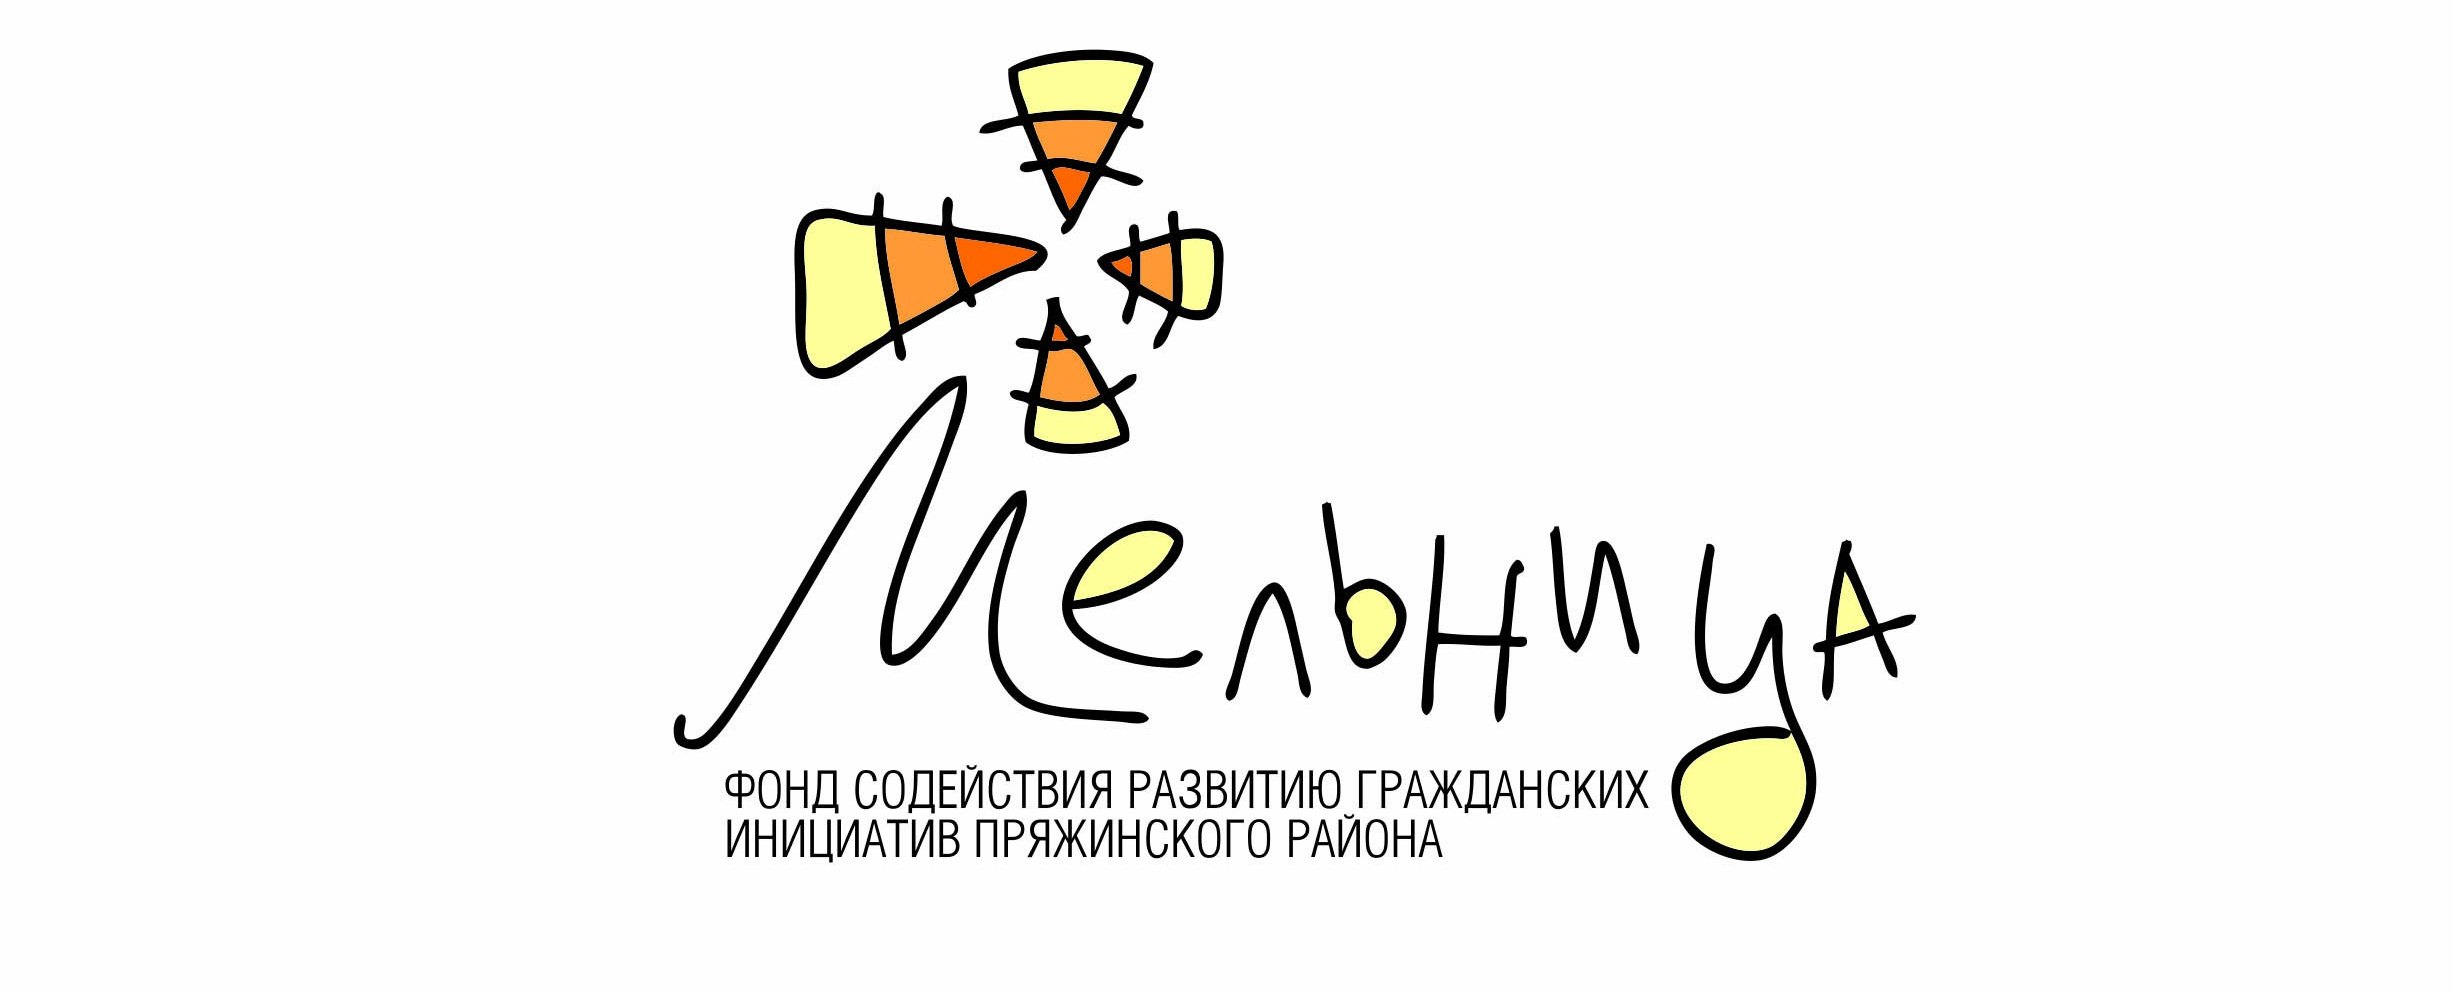 Логотипы анимационных студий